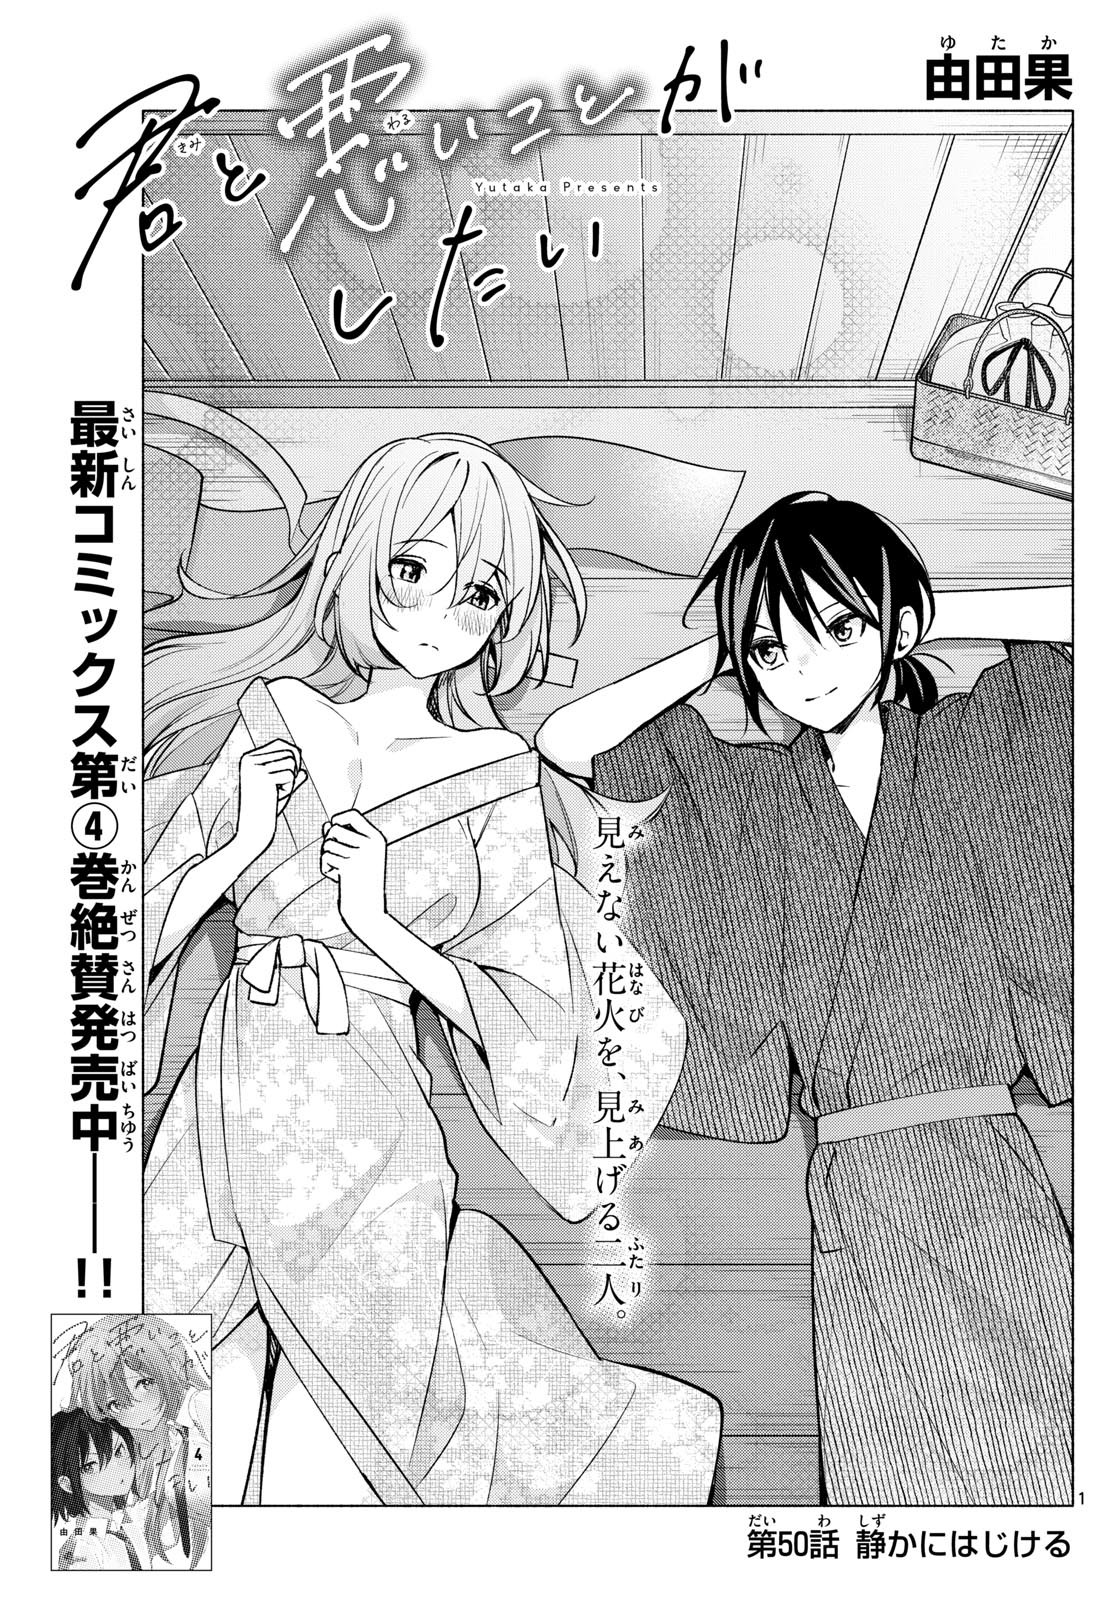 Kimi to Warui Koto ga Shitai - Chapter 050 - Page 1